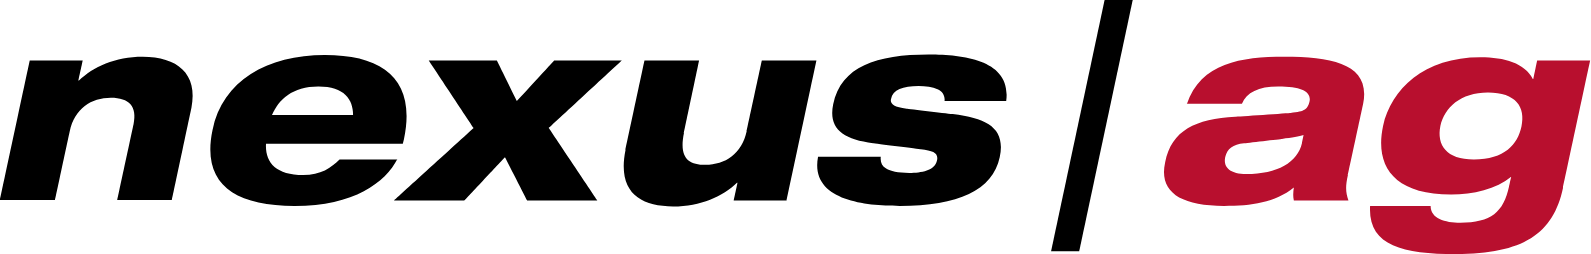 Nexus AG logo (PNG transparent)